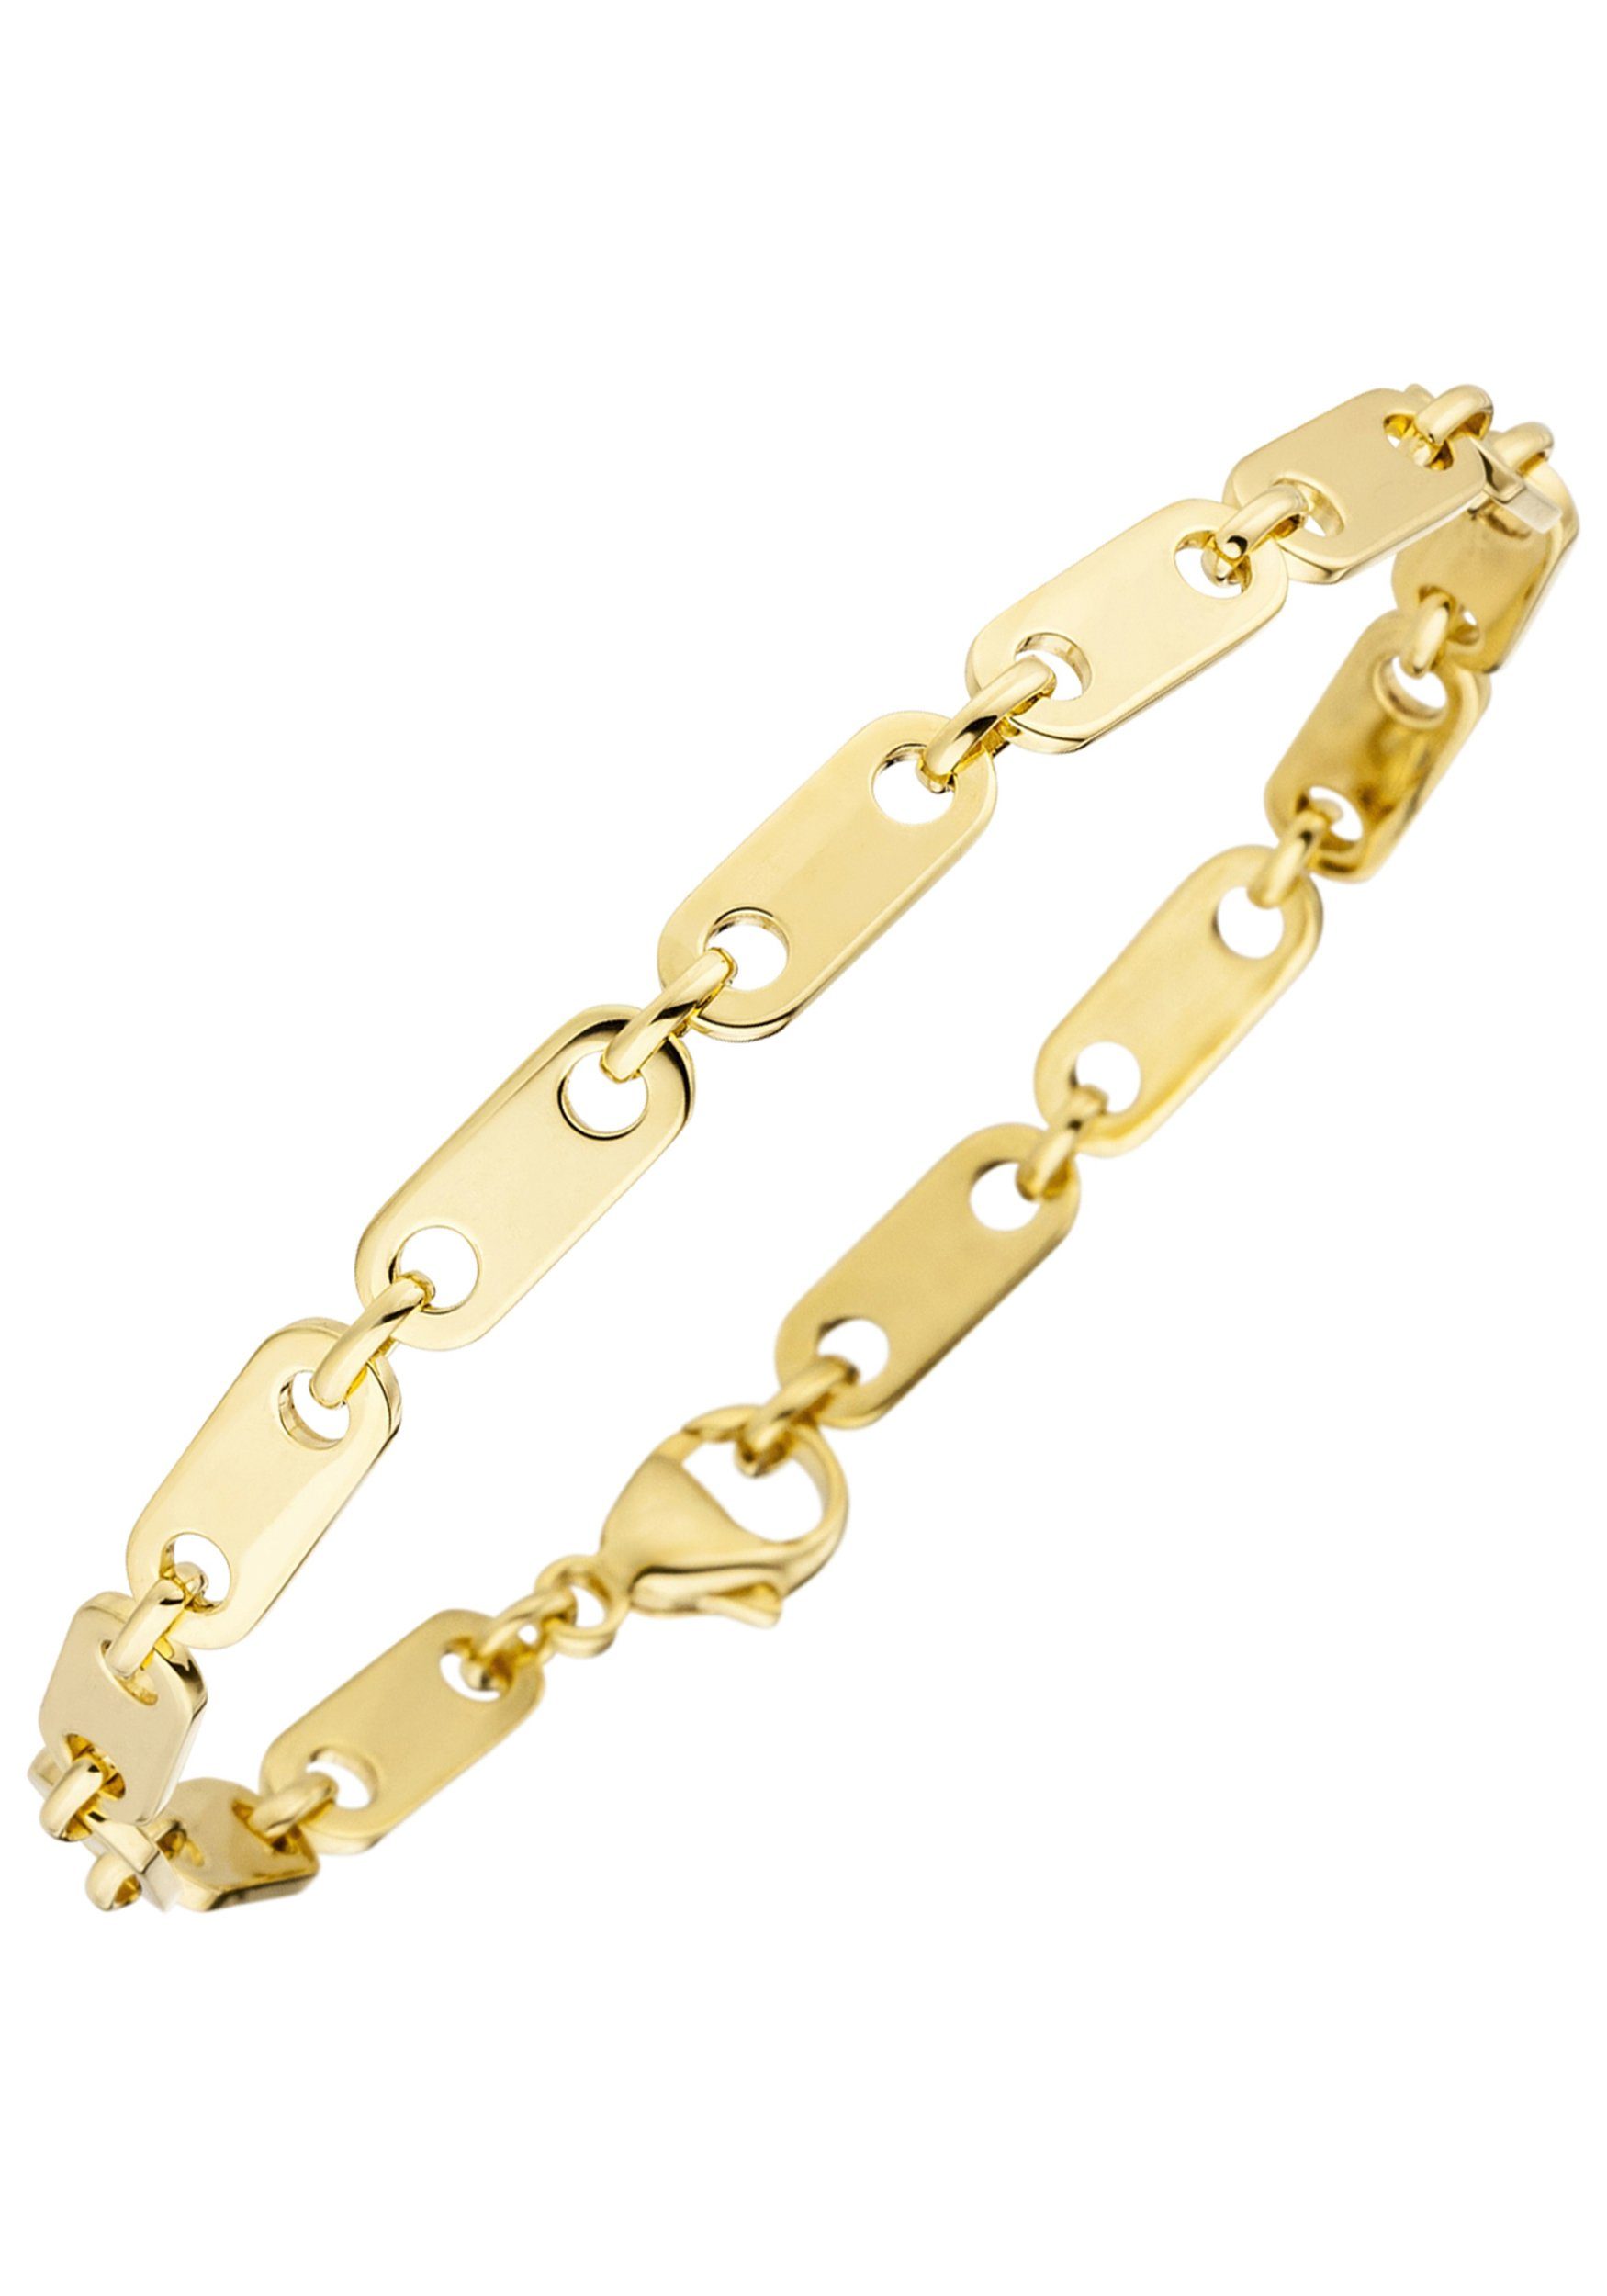 JOBO Goldarmband, 585 Gold 21 cm, Mit Karabinerverschluss online kaufen |  OTTO